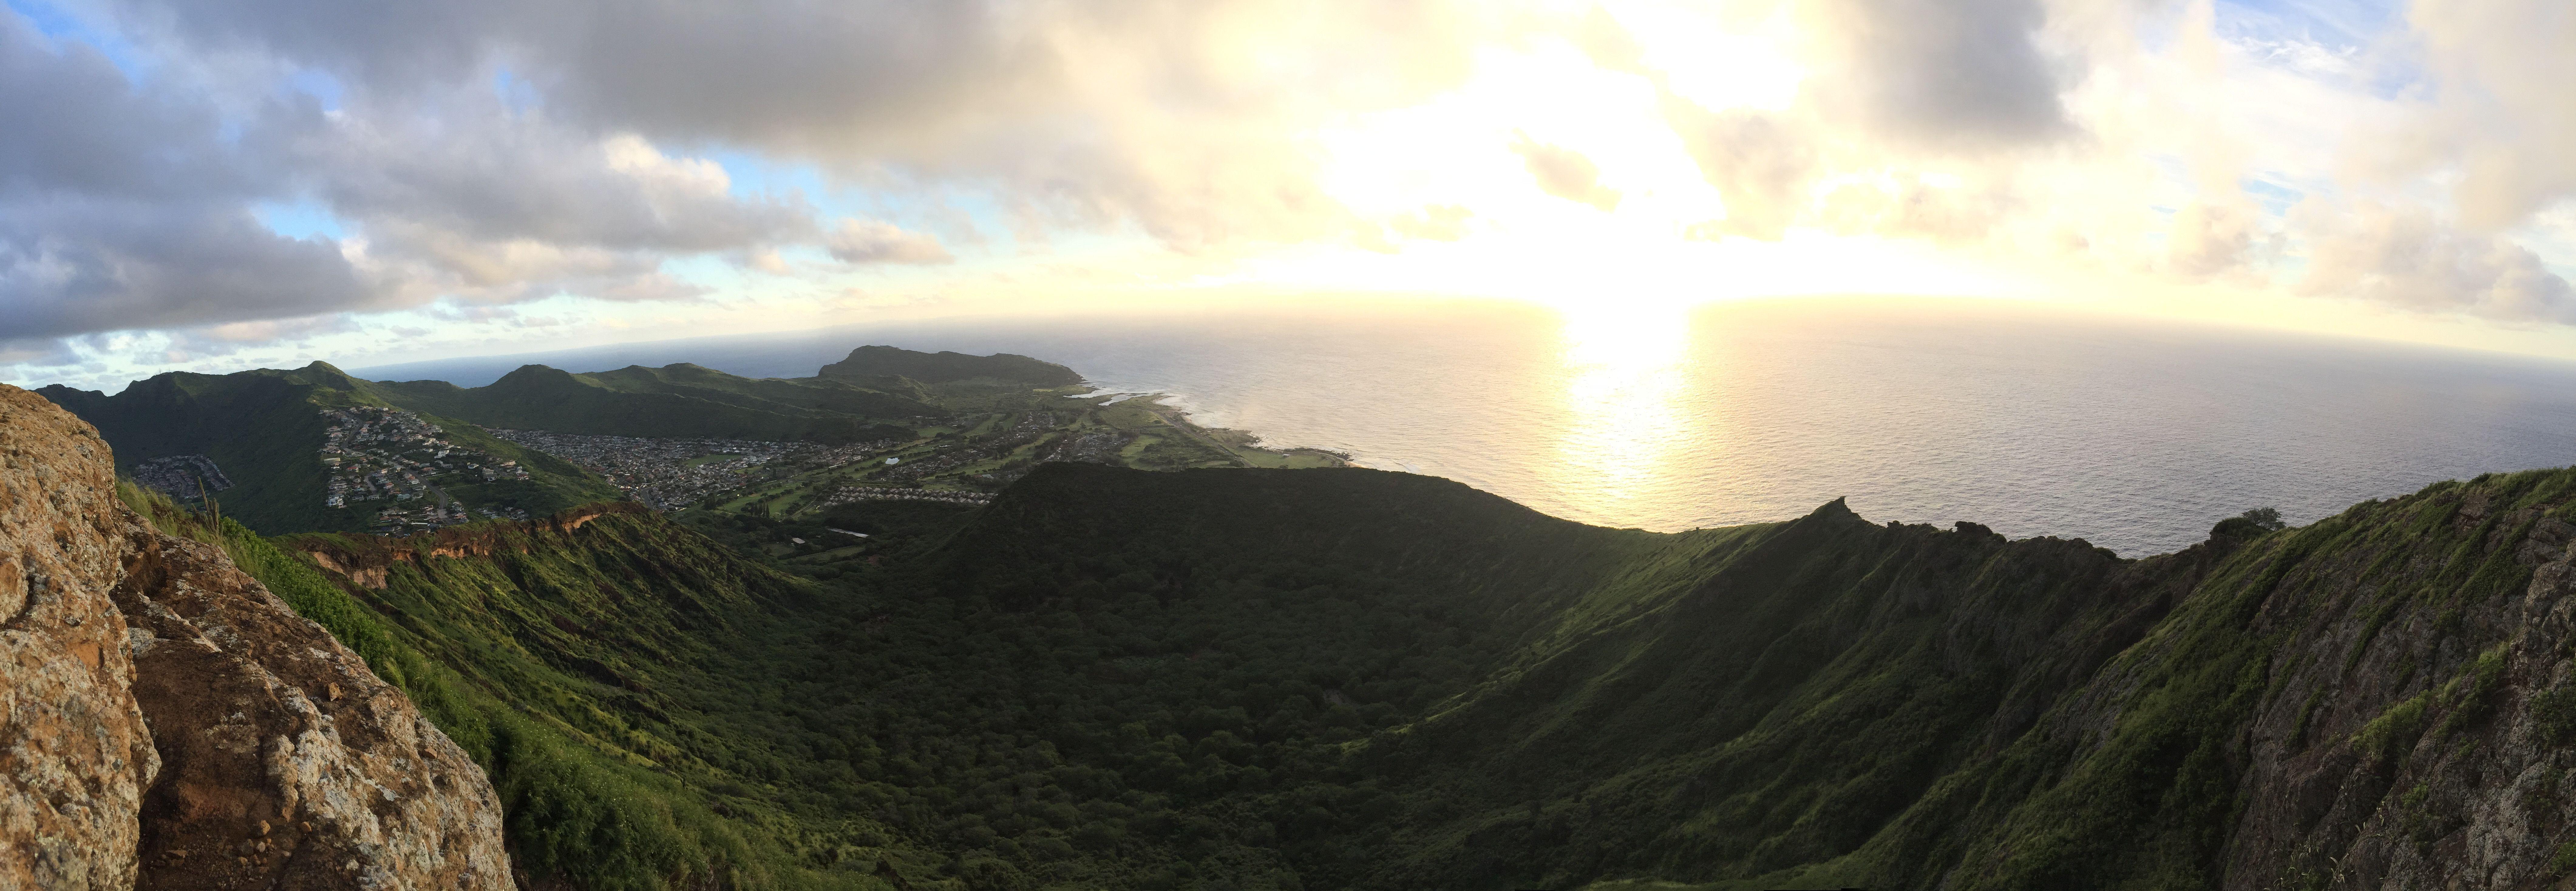 My view at the end of the Koko Head Hike in Honolulu HI OC